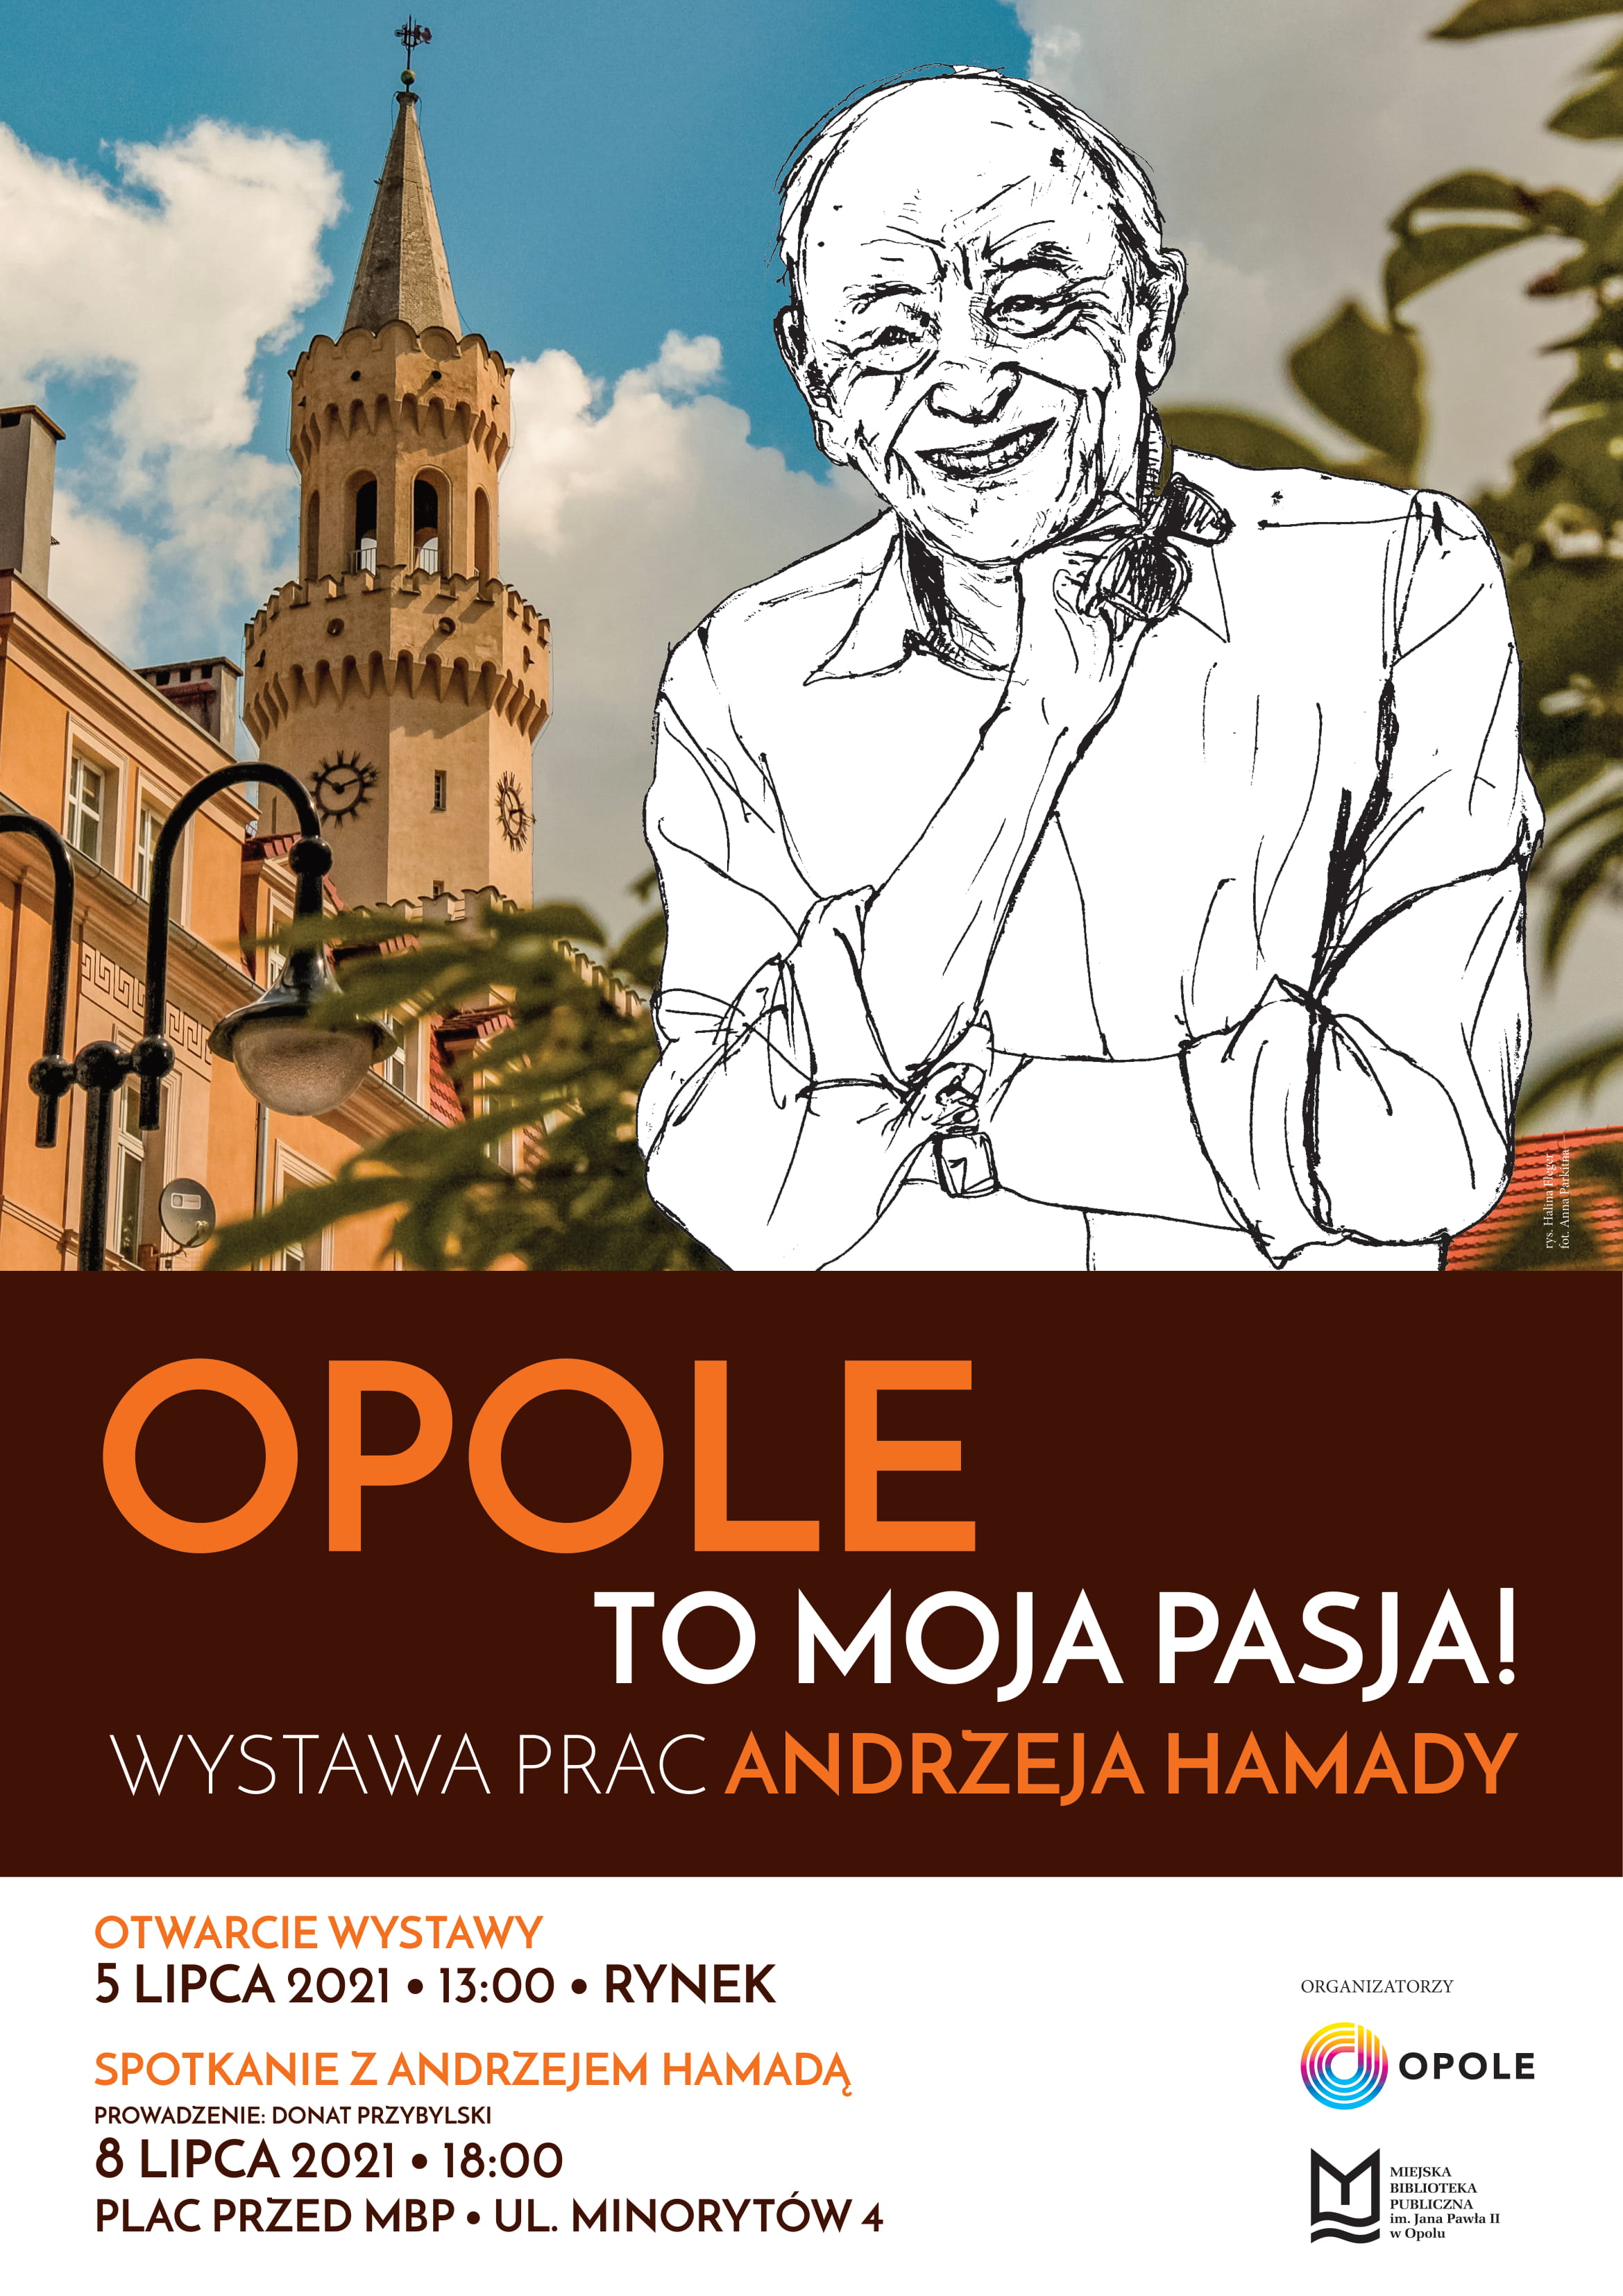 &#8222;Opole to moja pasja!&#8221; wkrótce otwarcie wystawy prac Andrzeja Hamady